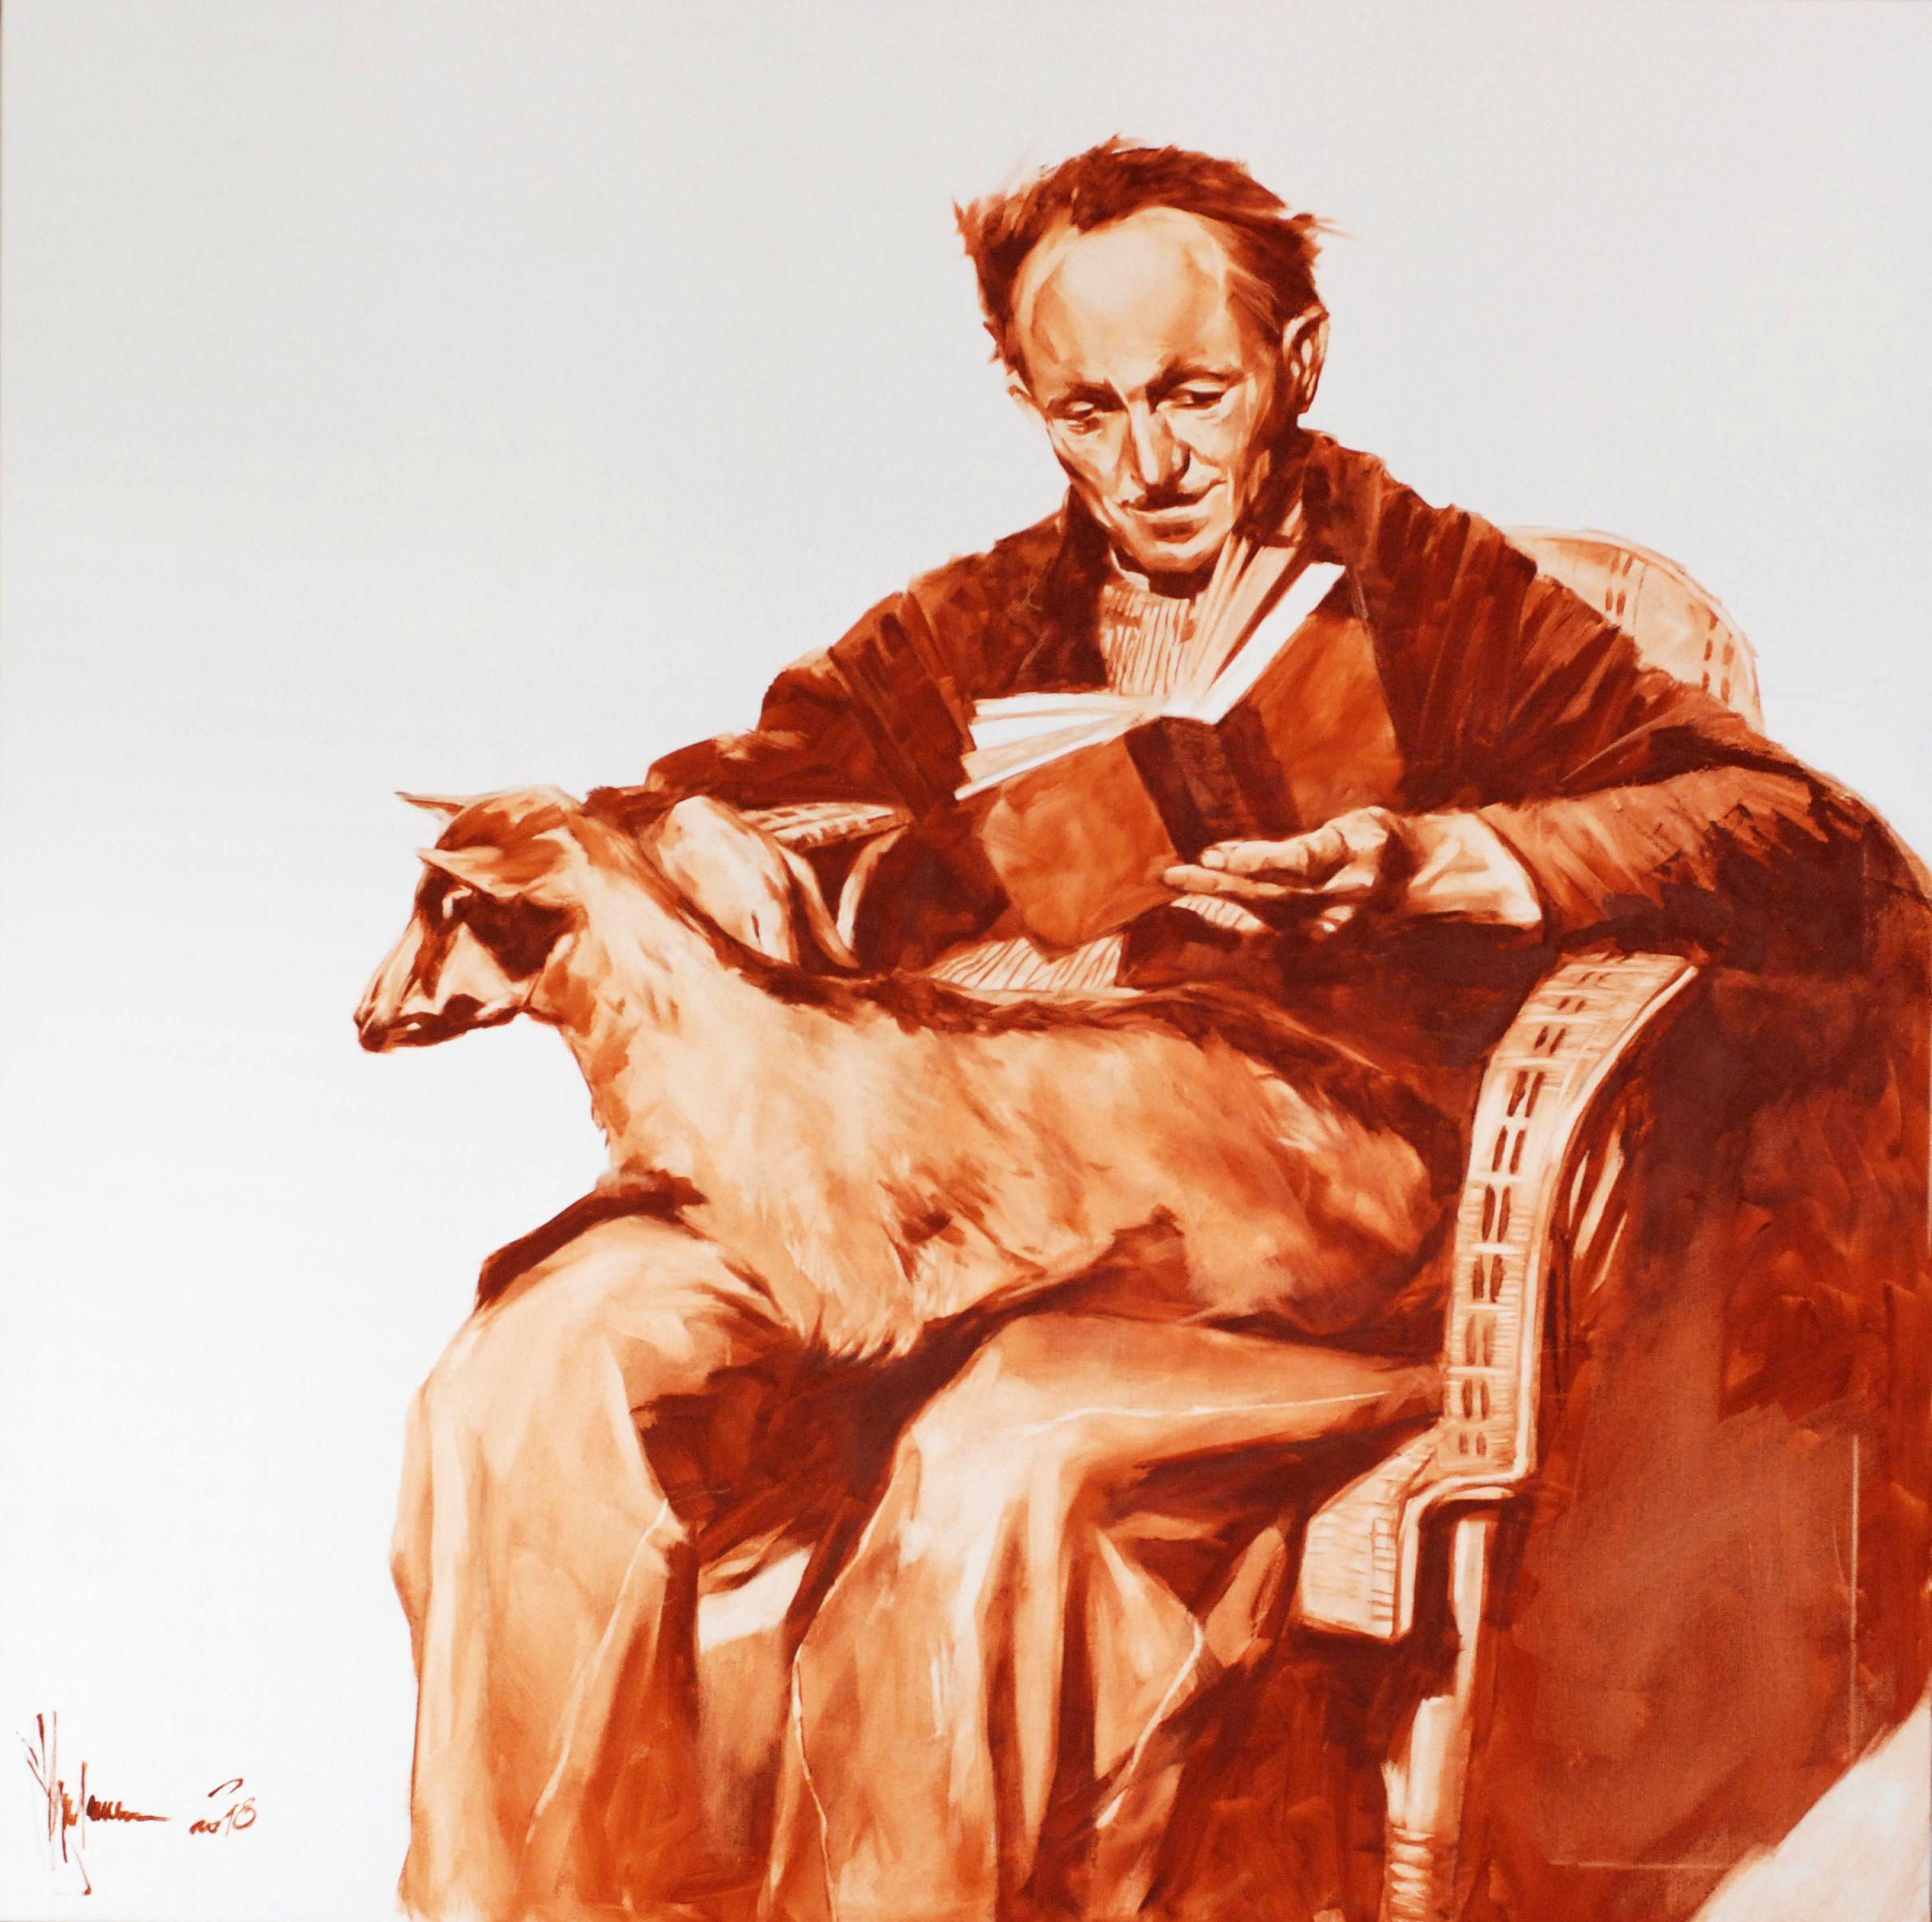 Vieux homme avec chèvre, peinture, huile sur toile - Painting de Igor Shulman